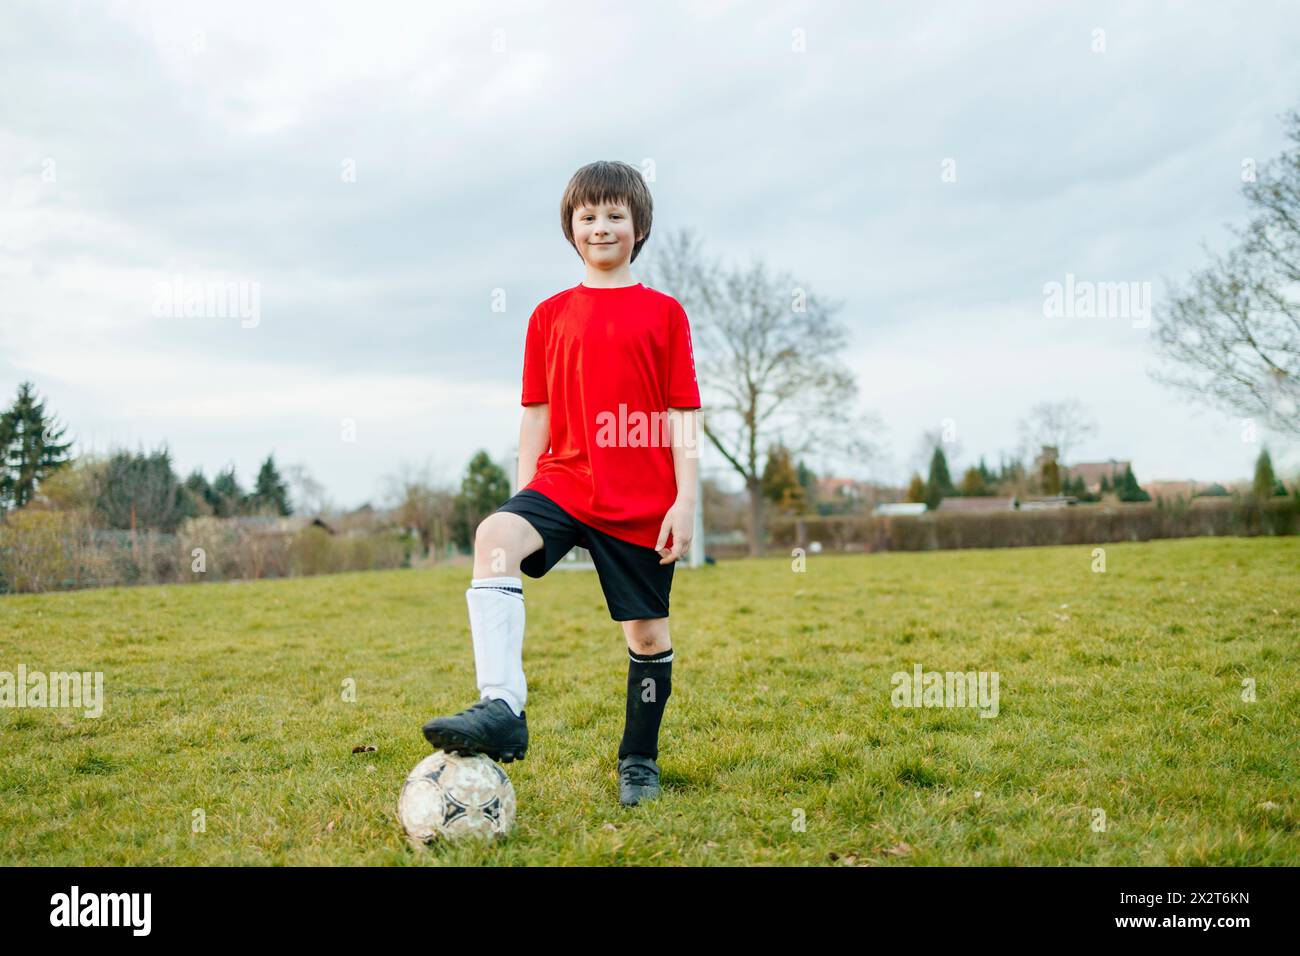 Garçon souriant debout avec le pied sur le ballon de football dans le champ Banque D'Images